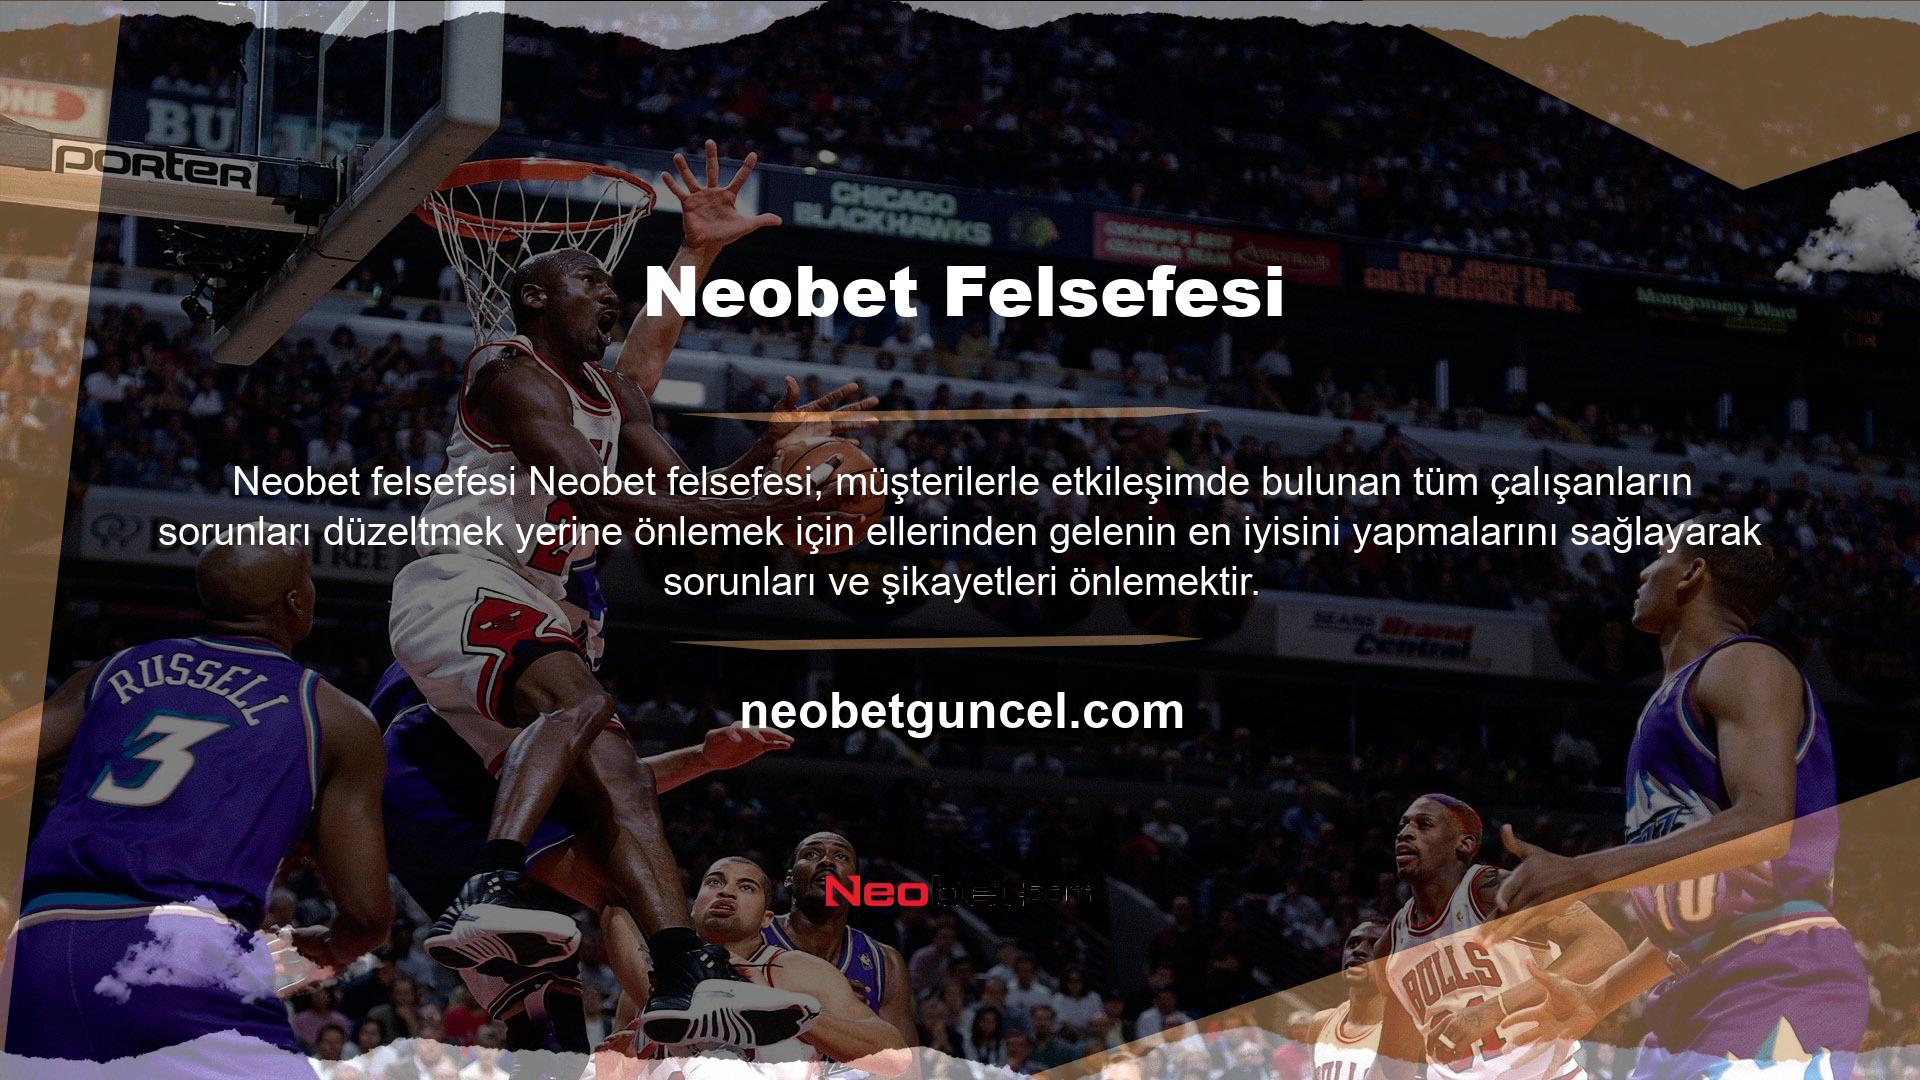 Bazı küçük engellere rağmen Neobet yetkin ekibi projenin başarısında önemli rol oynadı